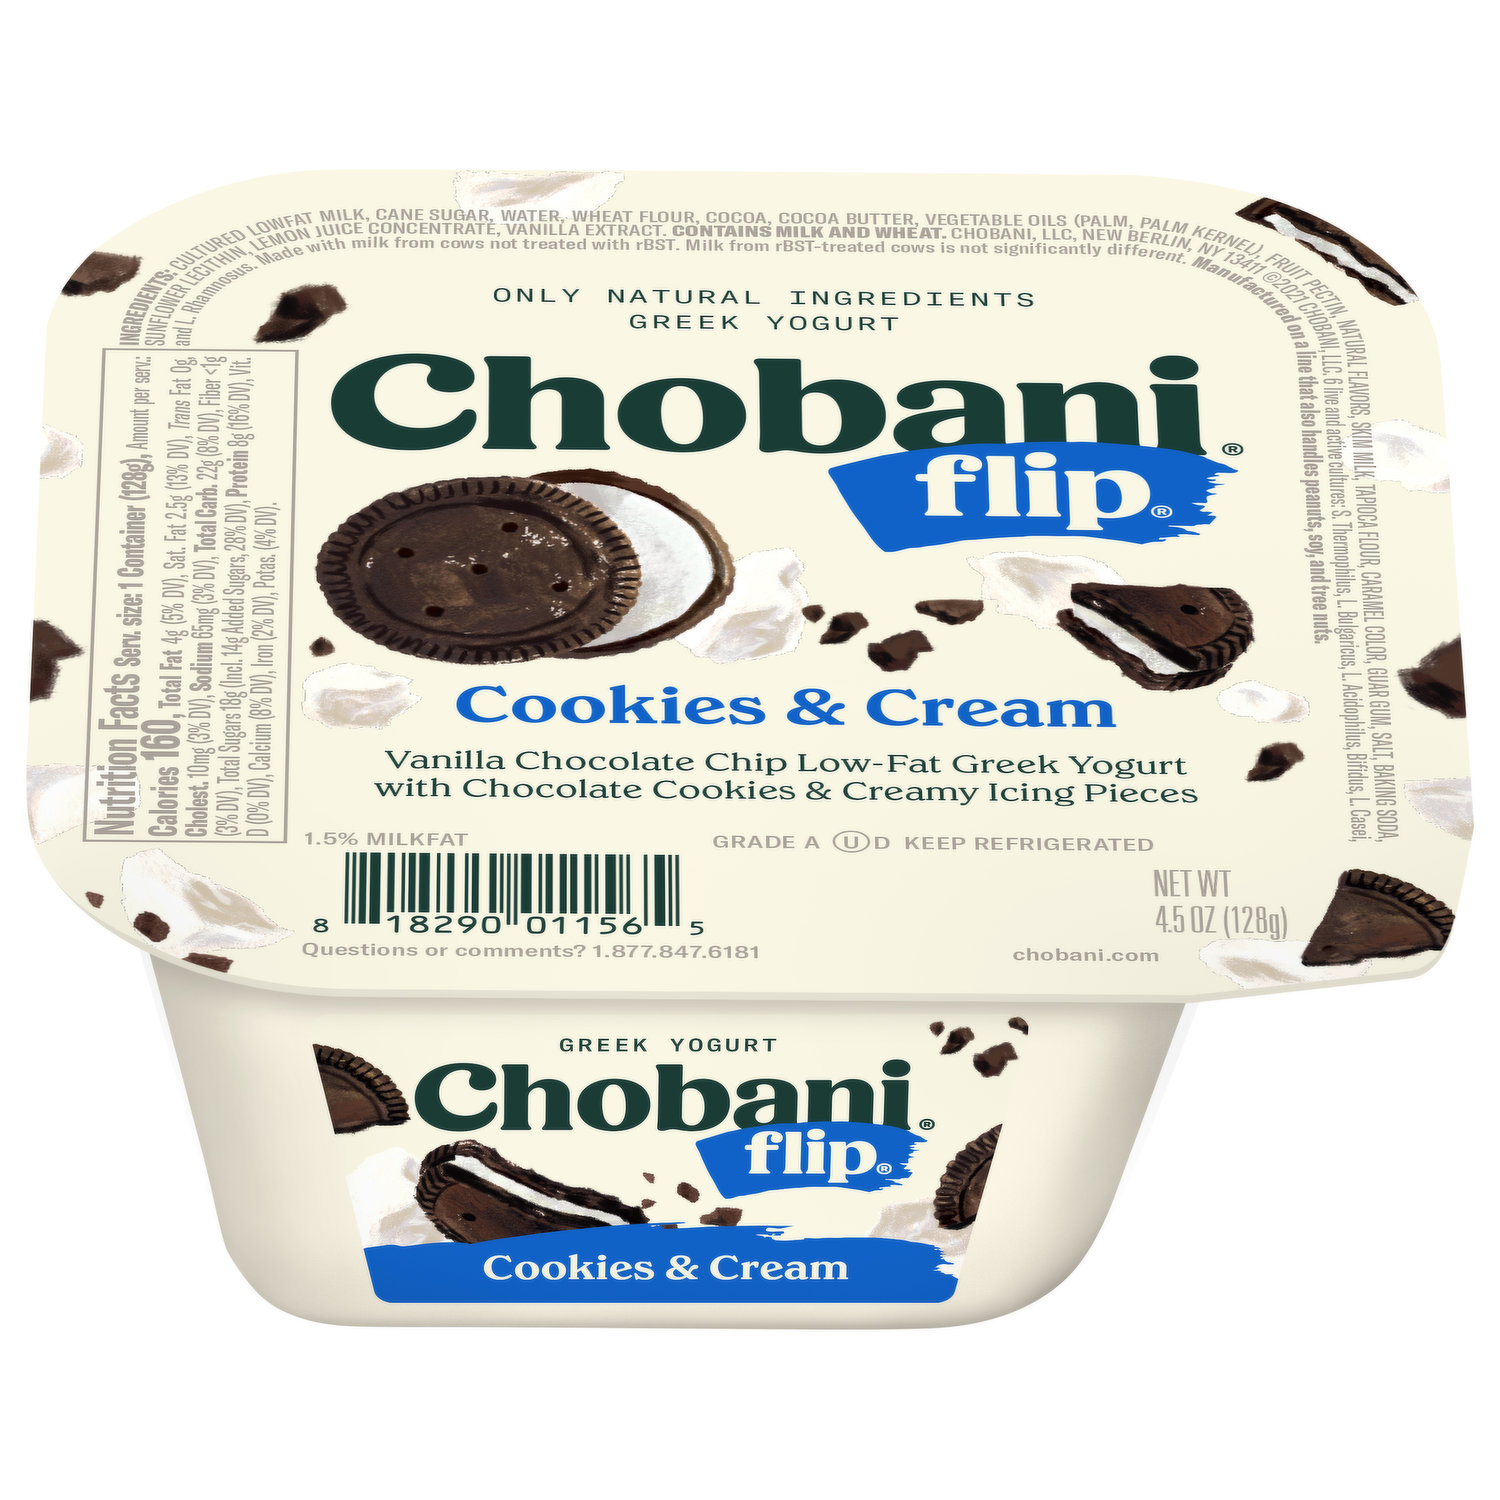 Được pha chế từ sữa chua ngon miệng và vị cookies & cream thơm ngon, sản phẩm sữa chua Chobani Cookies & Cream sẽ đưa bạn đến một thế giới tràn đầy hương vị tuyệt vời. Hãy cùng khám phá hình ảnh sản phẩm này để thưởng thức trọn vẹn chuỗi hương vị đặc biệt mà sữa chua Chobani mang lại.